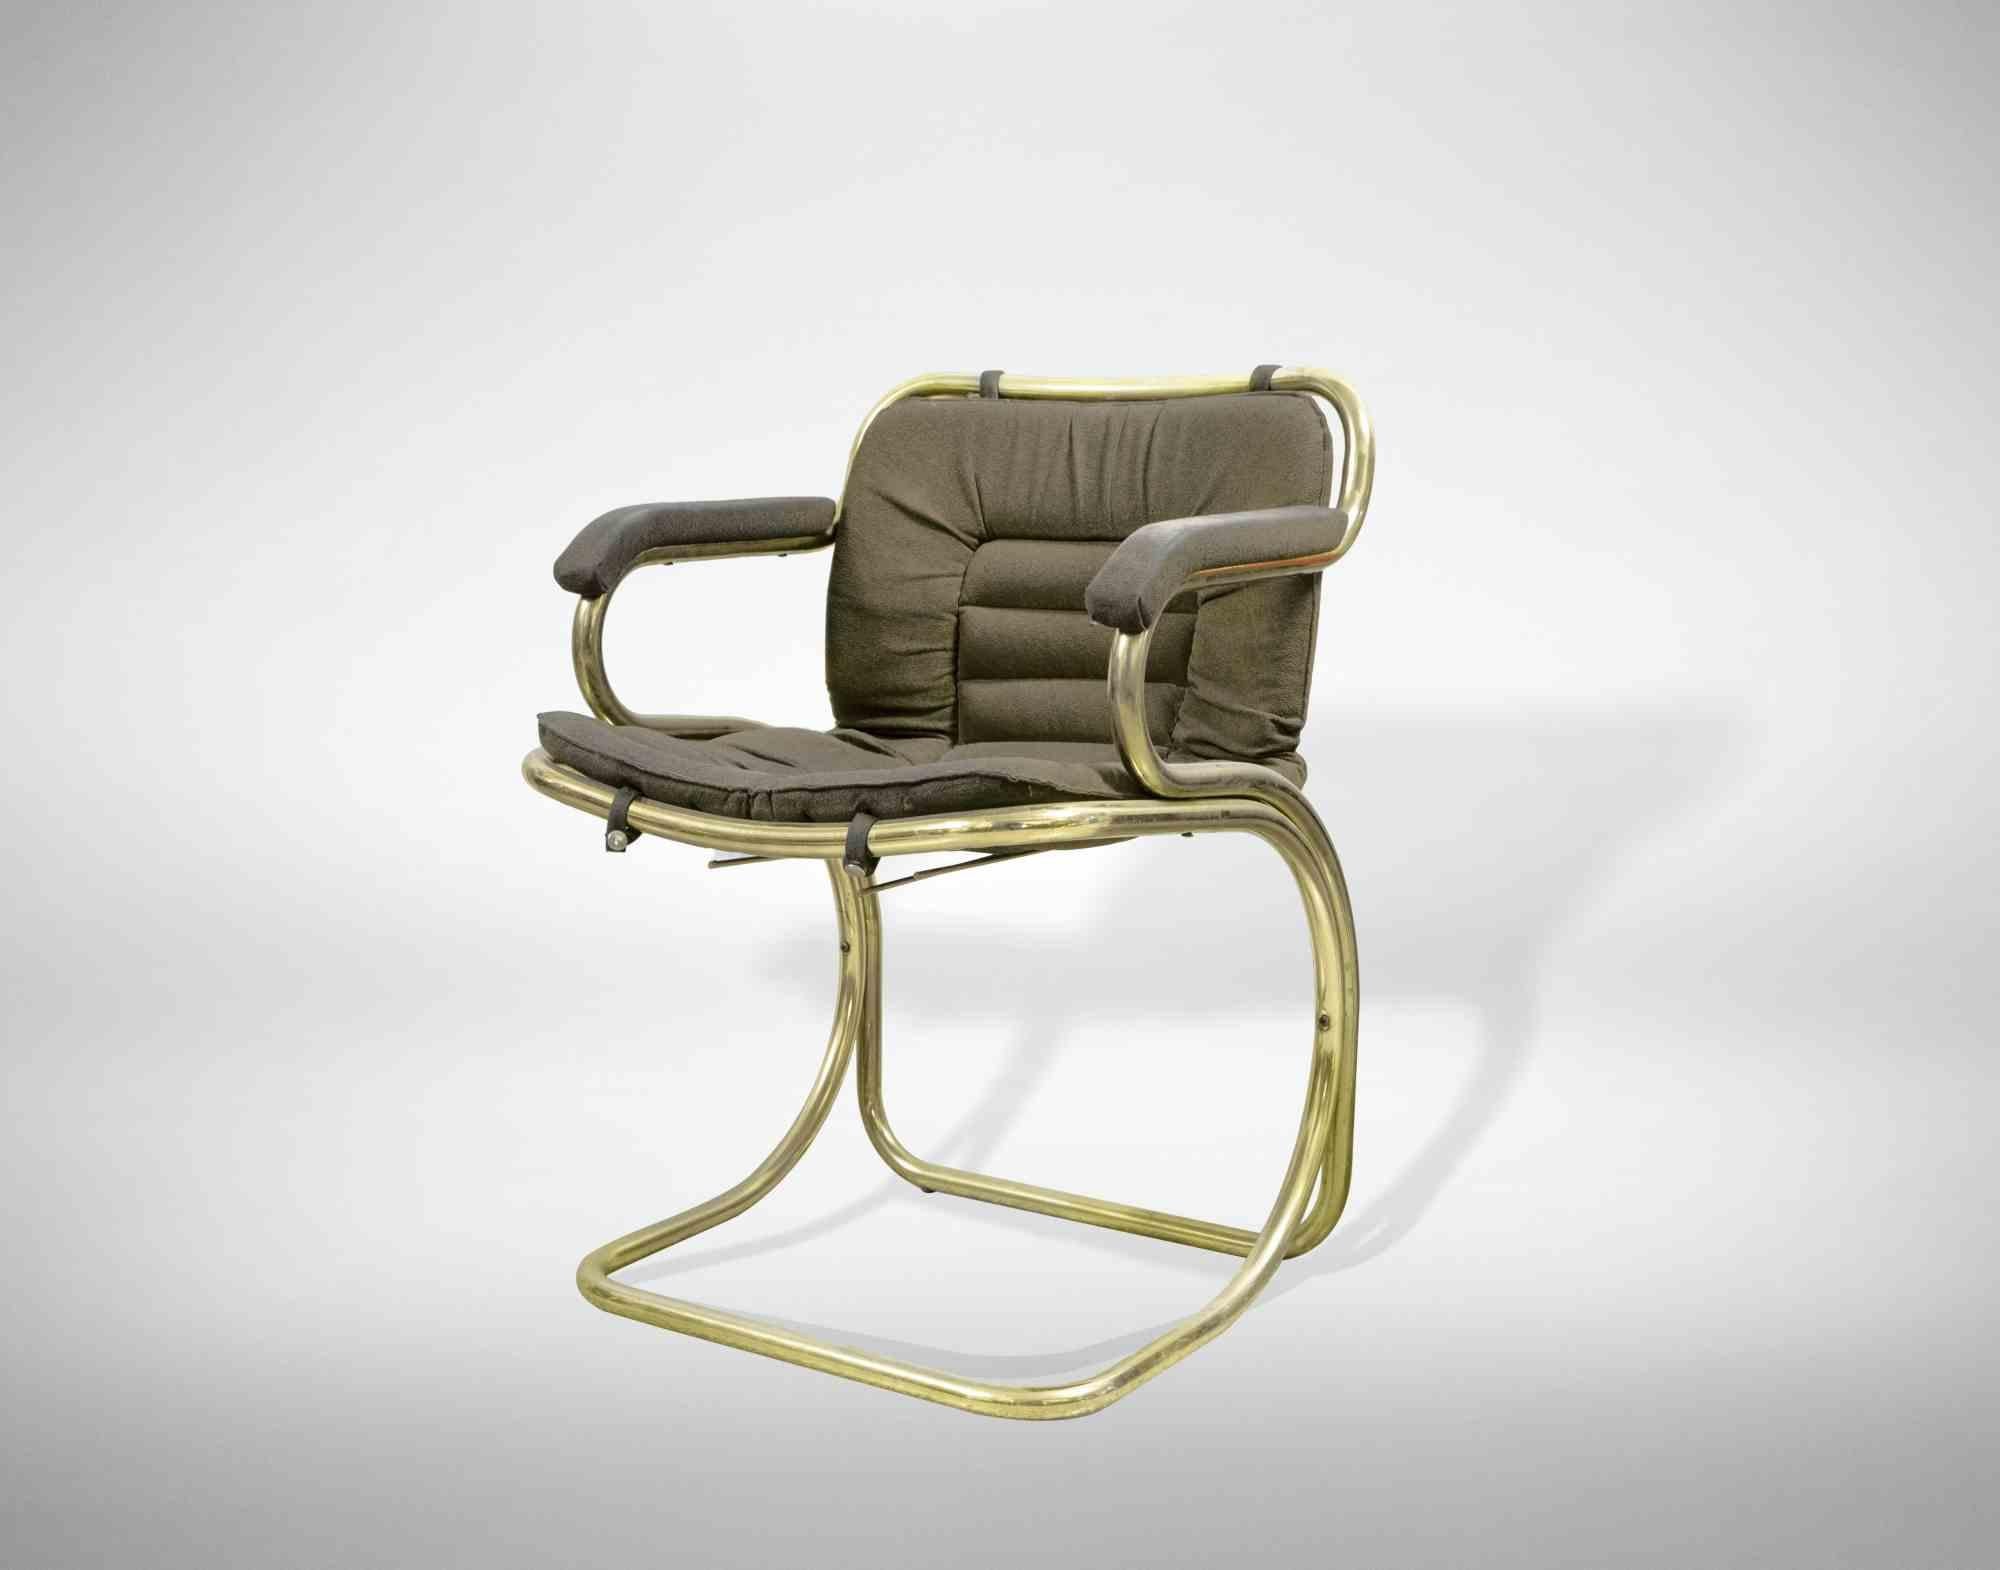 Ensemble de 3 chaises Cantilever est un mobilier design original réalisé par Gastone Rinaldi dans la moitié du 20ème siècle.

Rare ensemble de 3 chaises entièrement en laiton (très rare) et en tissu, avec des pad d'accoudoir rembourrés.

Le